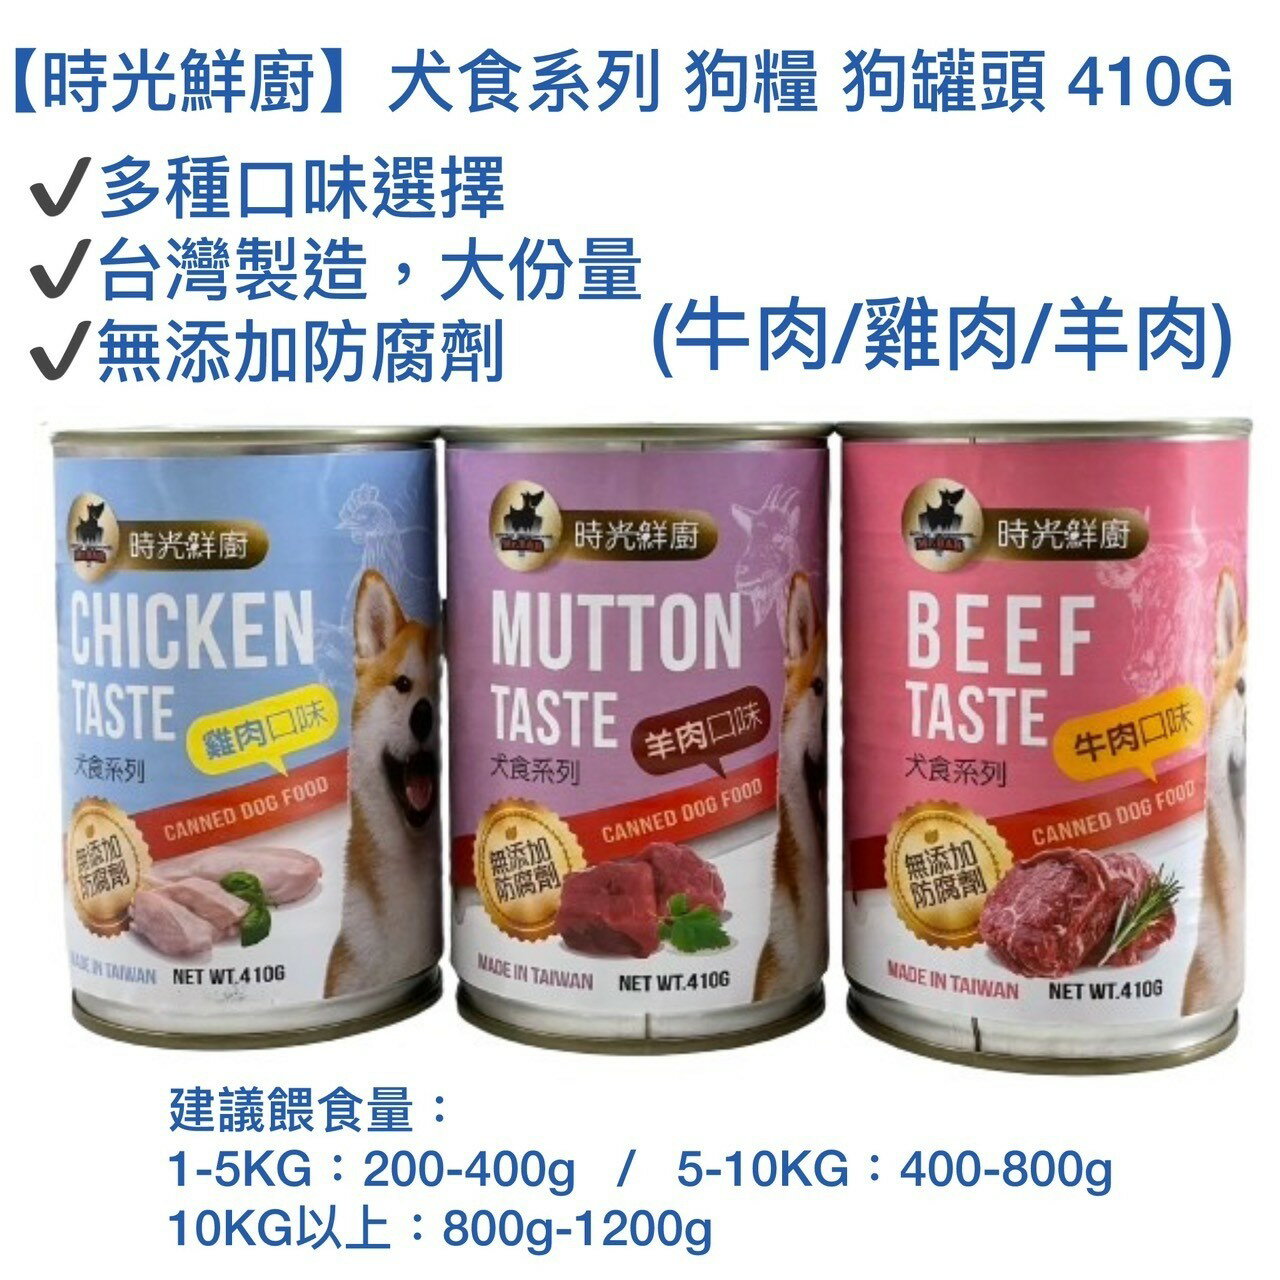 【時光鮮廚】犬食系列 狗糧 狗罐頭 410G (牛肉/雞肉/羊肉)